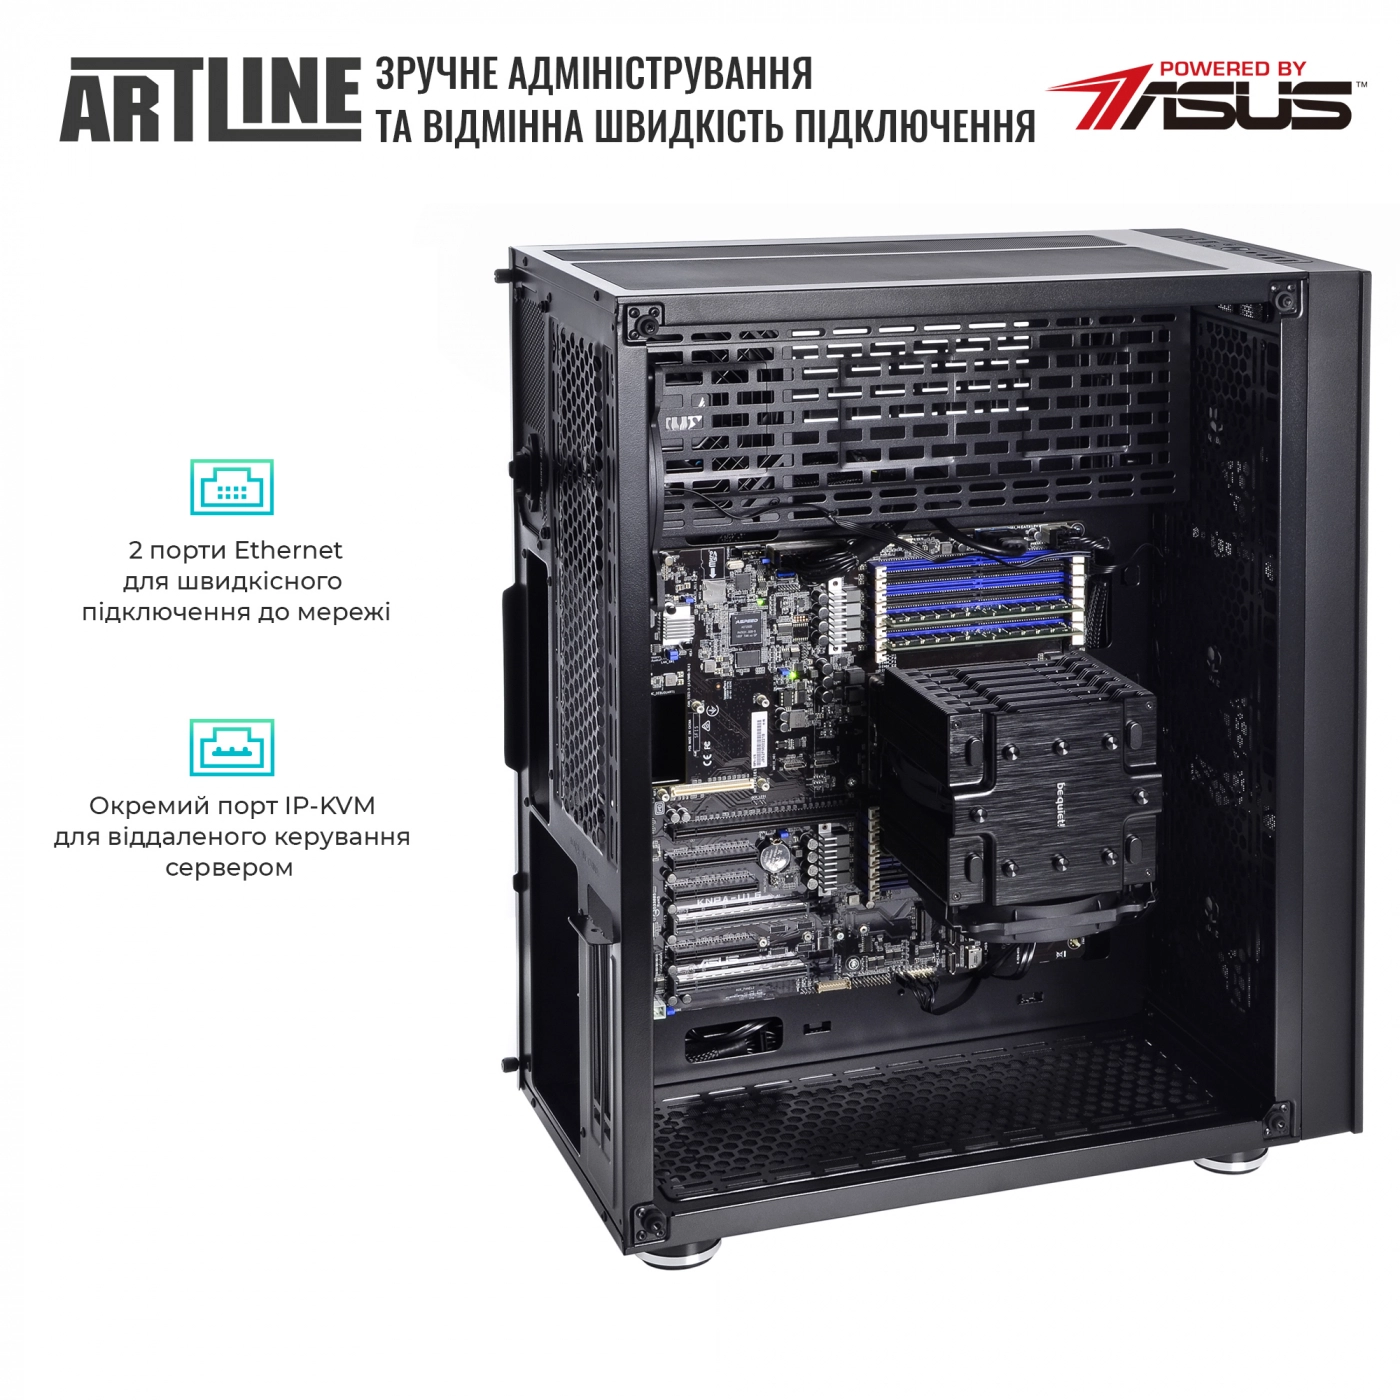 Купить Сервер ARTLINE Business T81v07 - фото 7